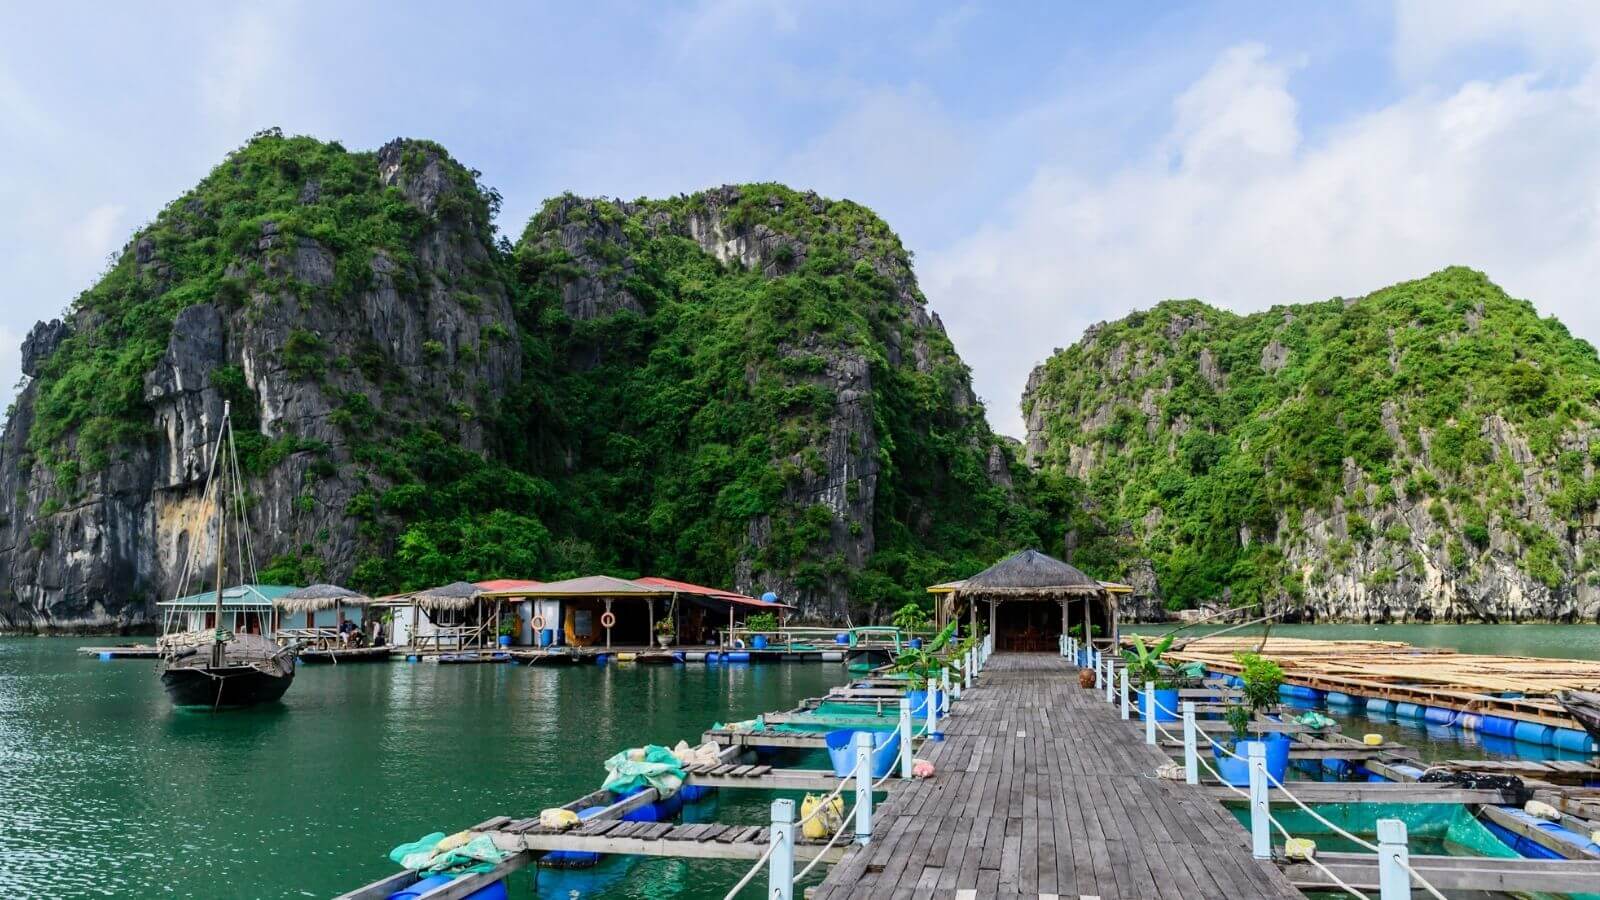 Halong bay - floating village